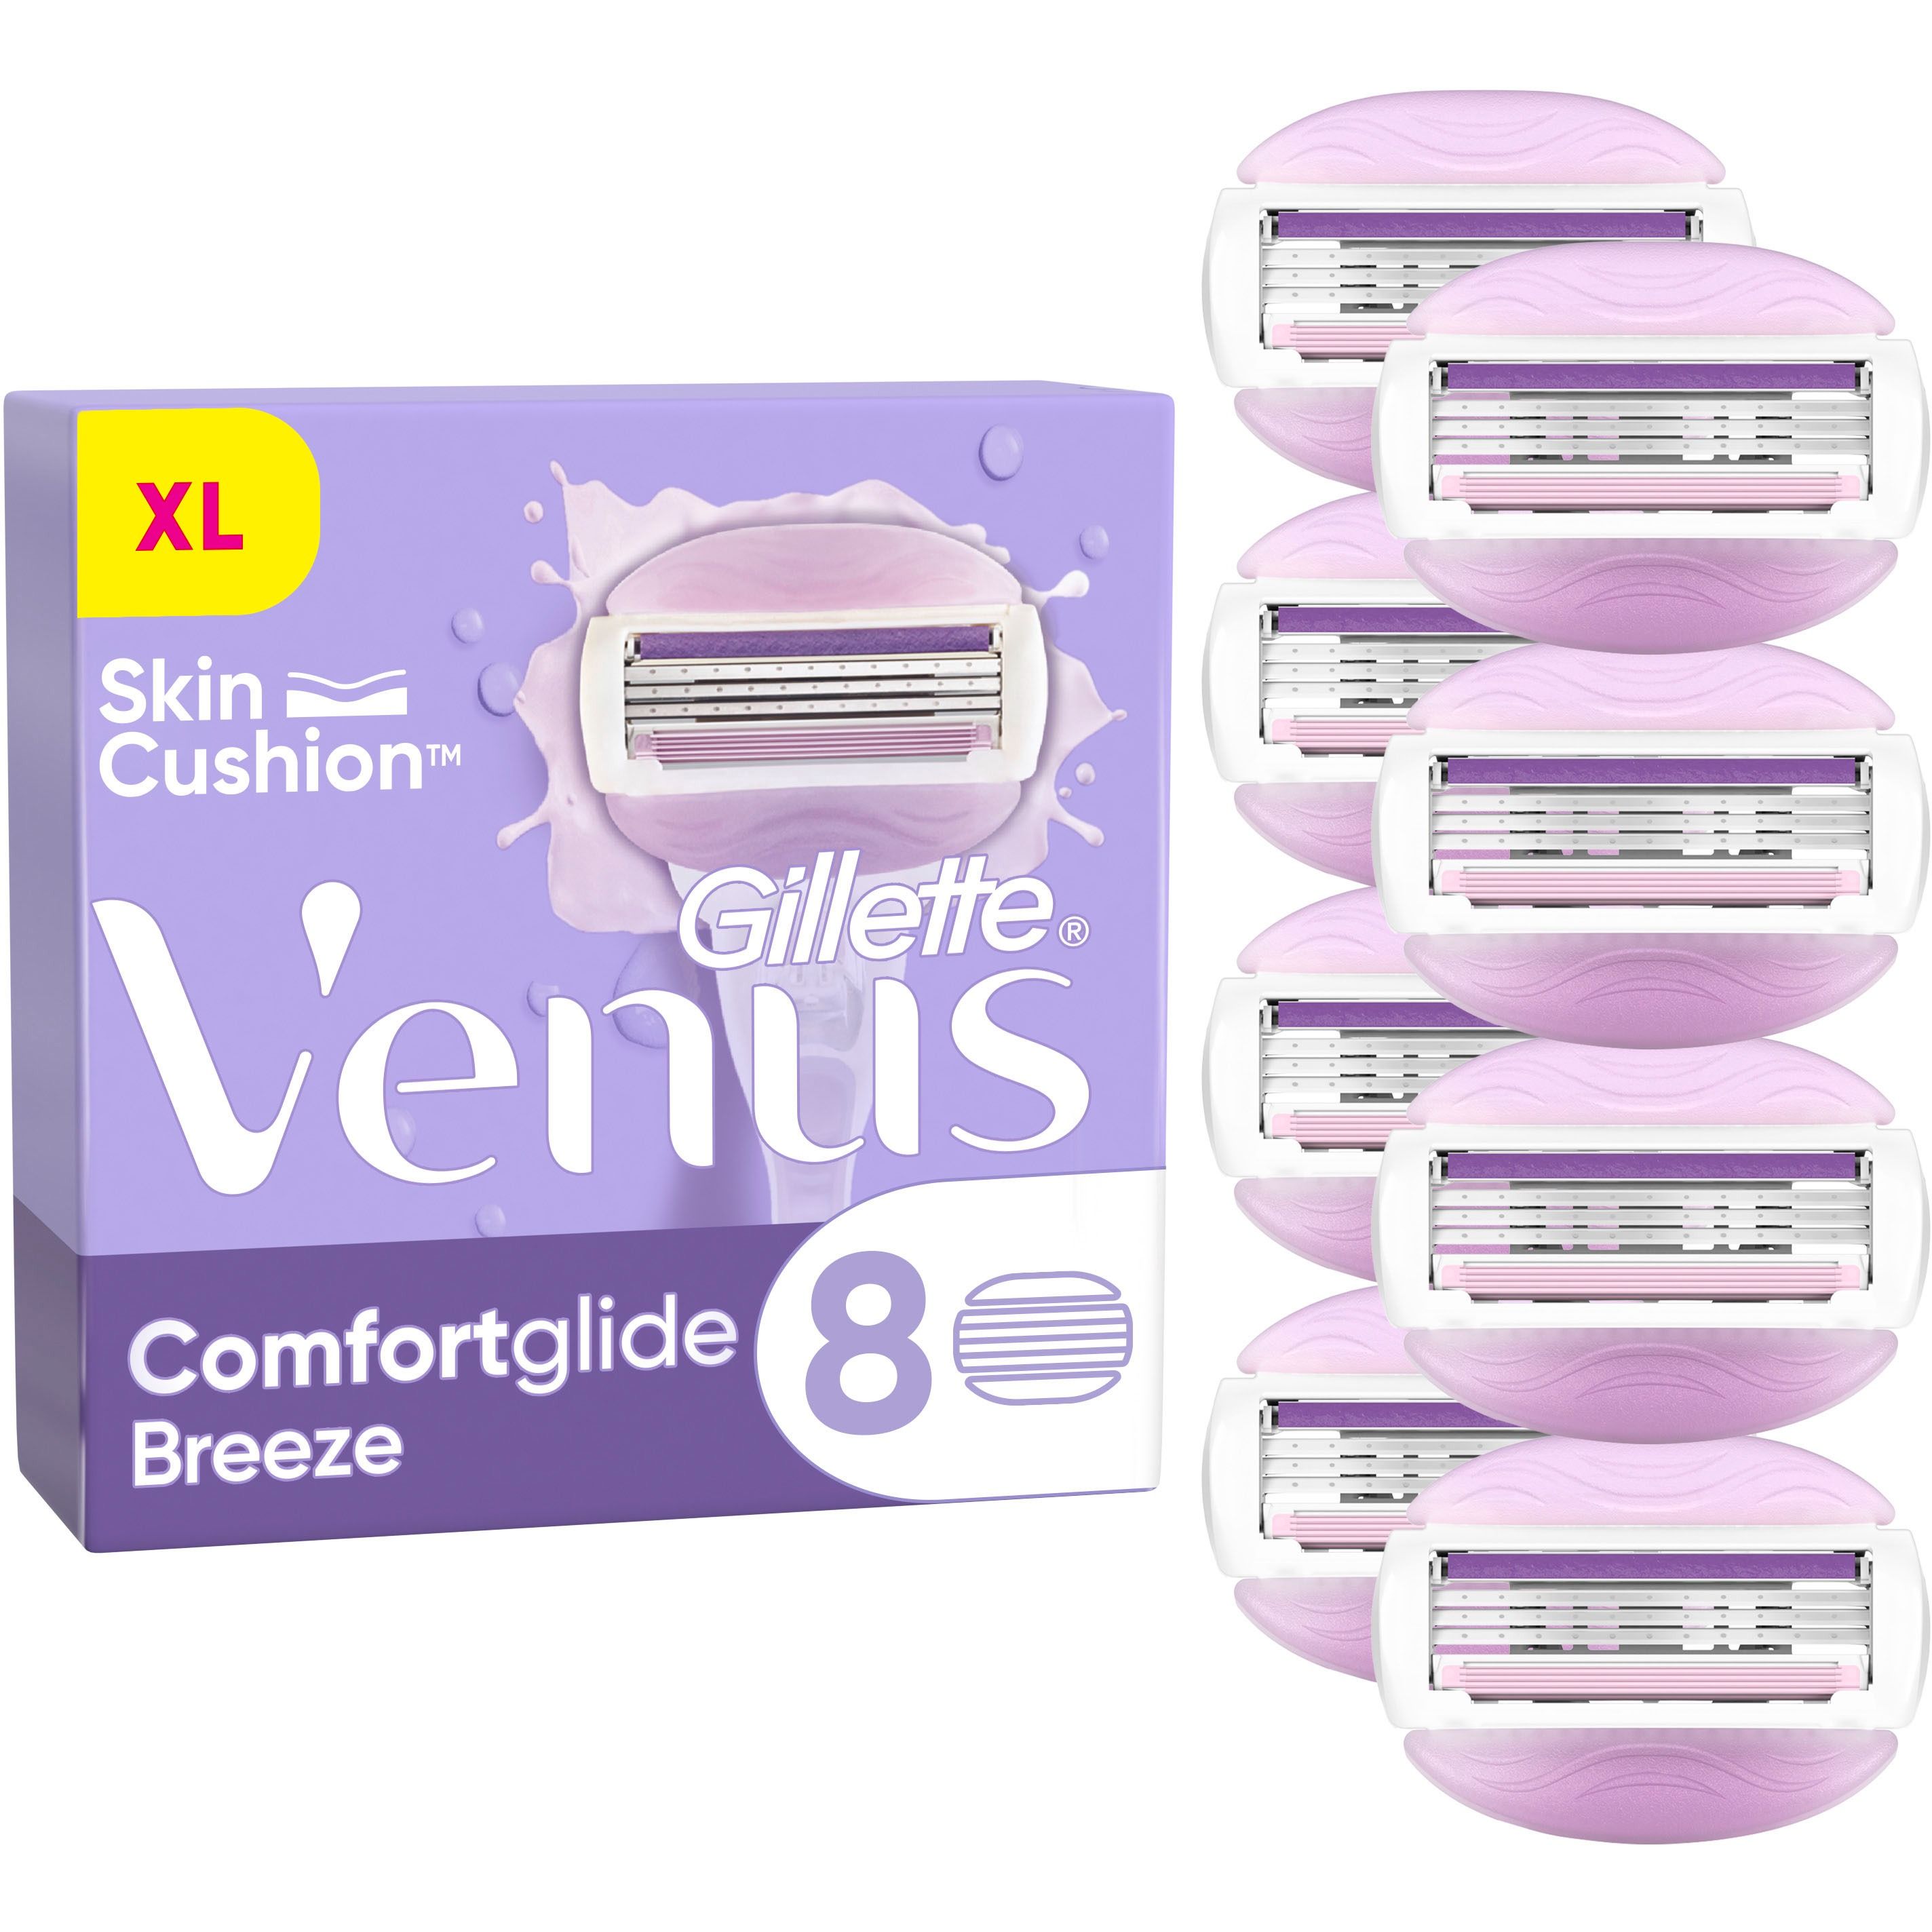 Сменные кассеты для бритья Venus Comfort Glide Breeze 8 шт. - фото 2